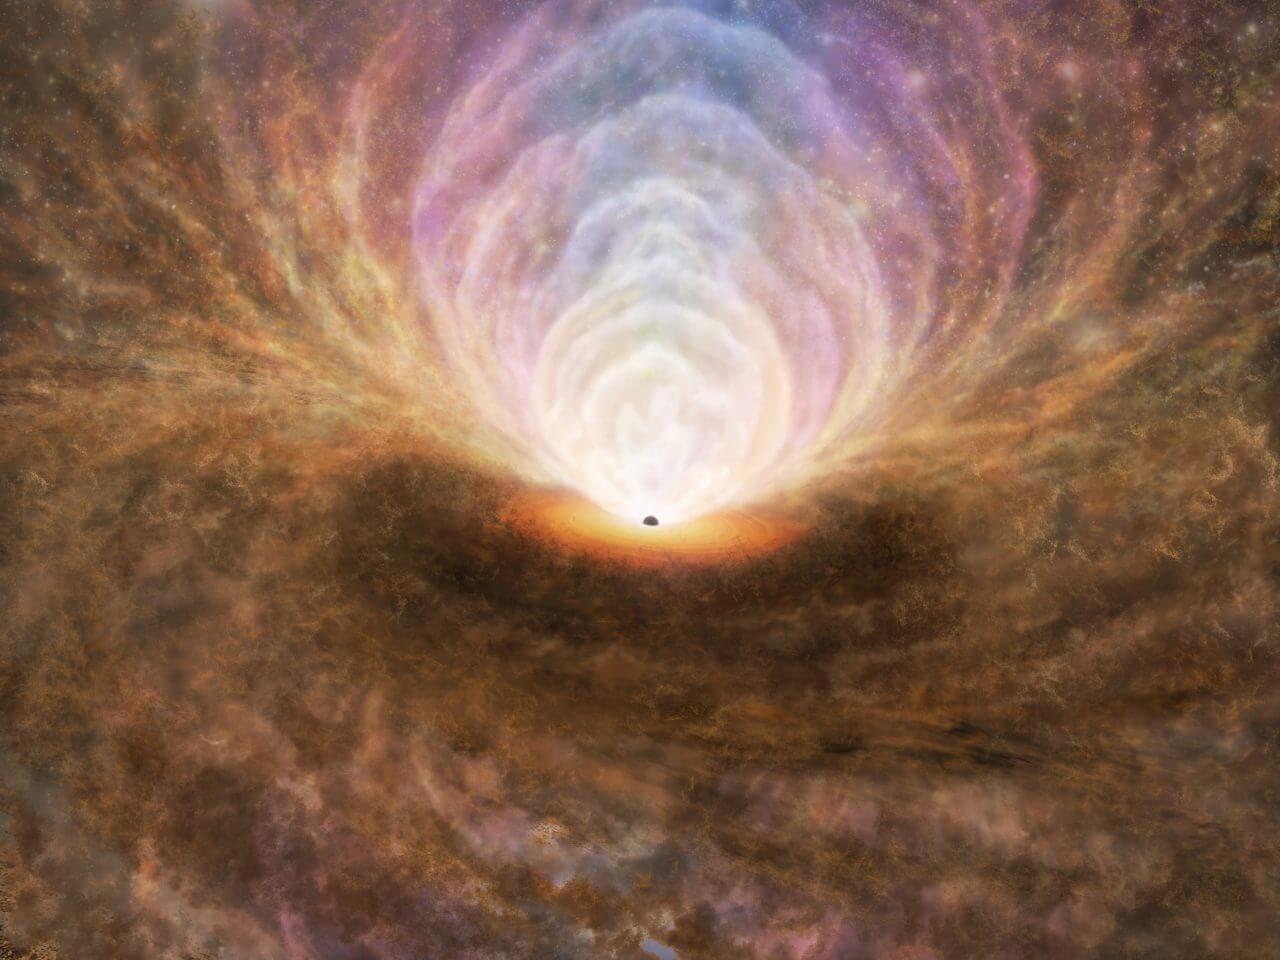 【▲図1: 今回の研究結果を反映したブラックホール周辺部の想像図。プラズマガスはブラックホールから垂直方向に流れ、分子状ガスや原子状ガスは斜め方向に流れます。このガス流は降着円盤へと戻る噴水のような運動をしていることも今回明らかにされました。 (Image Credit: ALMA (ESO/NAOJ/NRAO) , T. Izumi et al.) 】